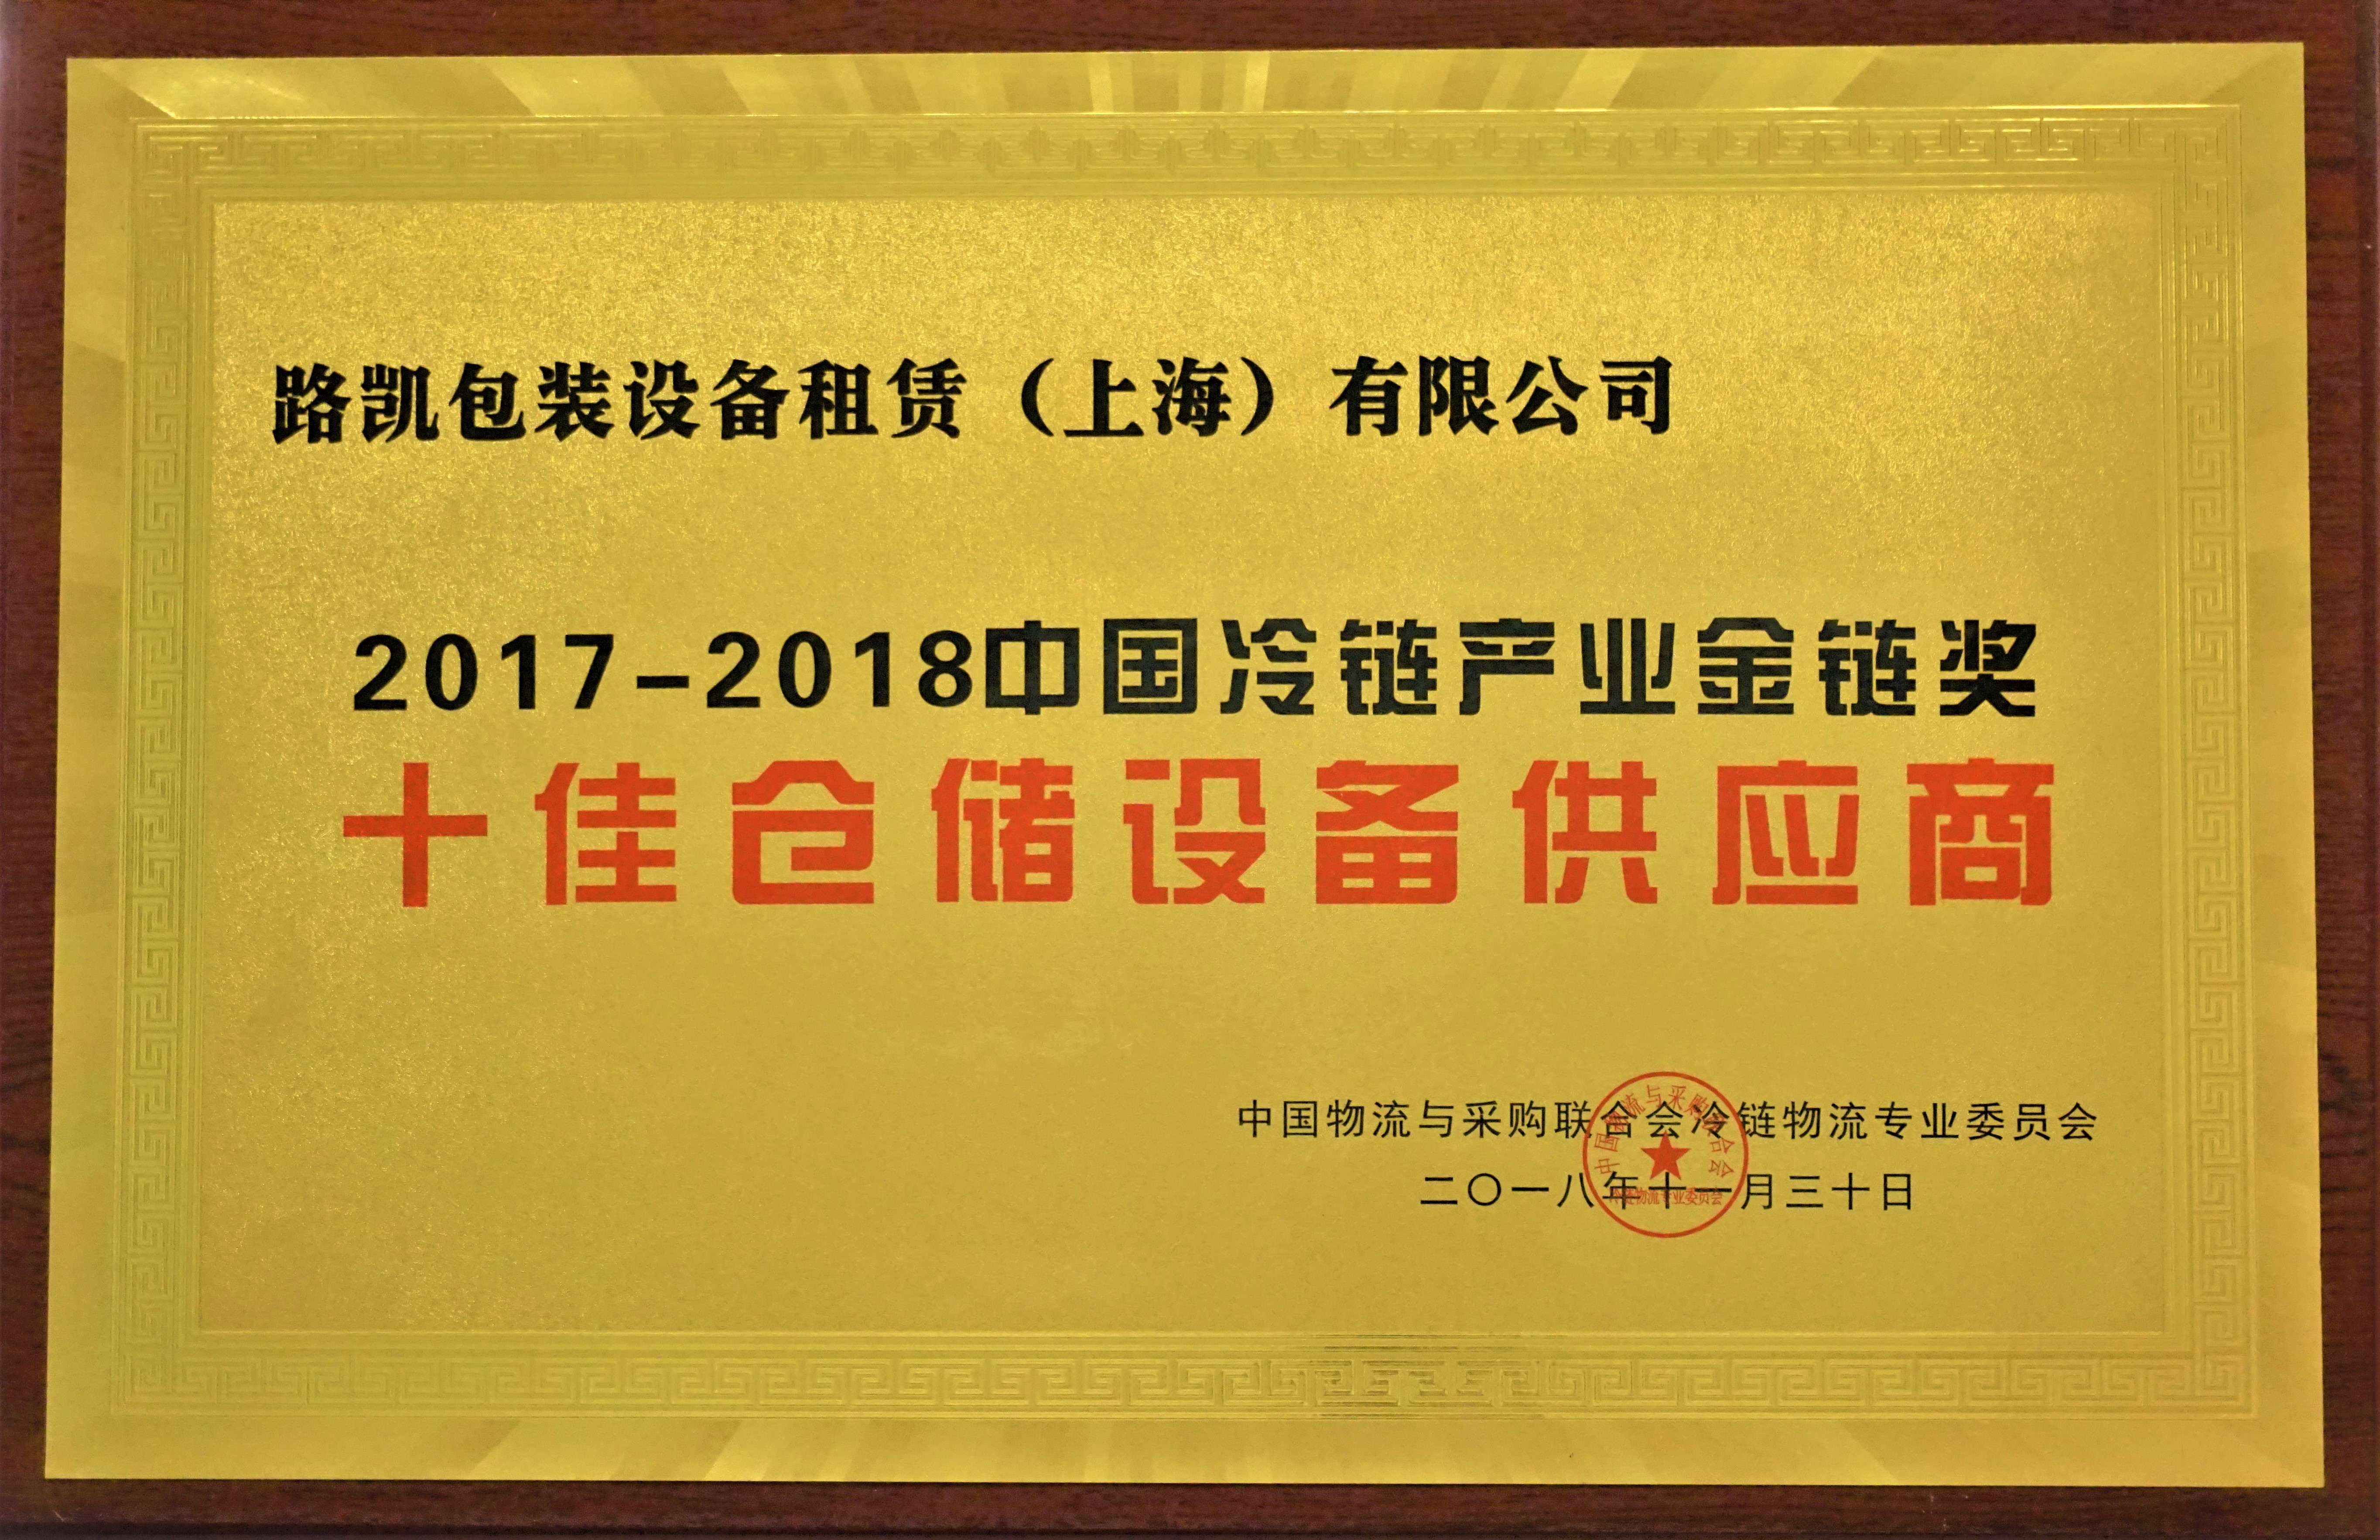 2017-2018十佳仓储设备供应商-中物联冷链物流专业委员会.JPG